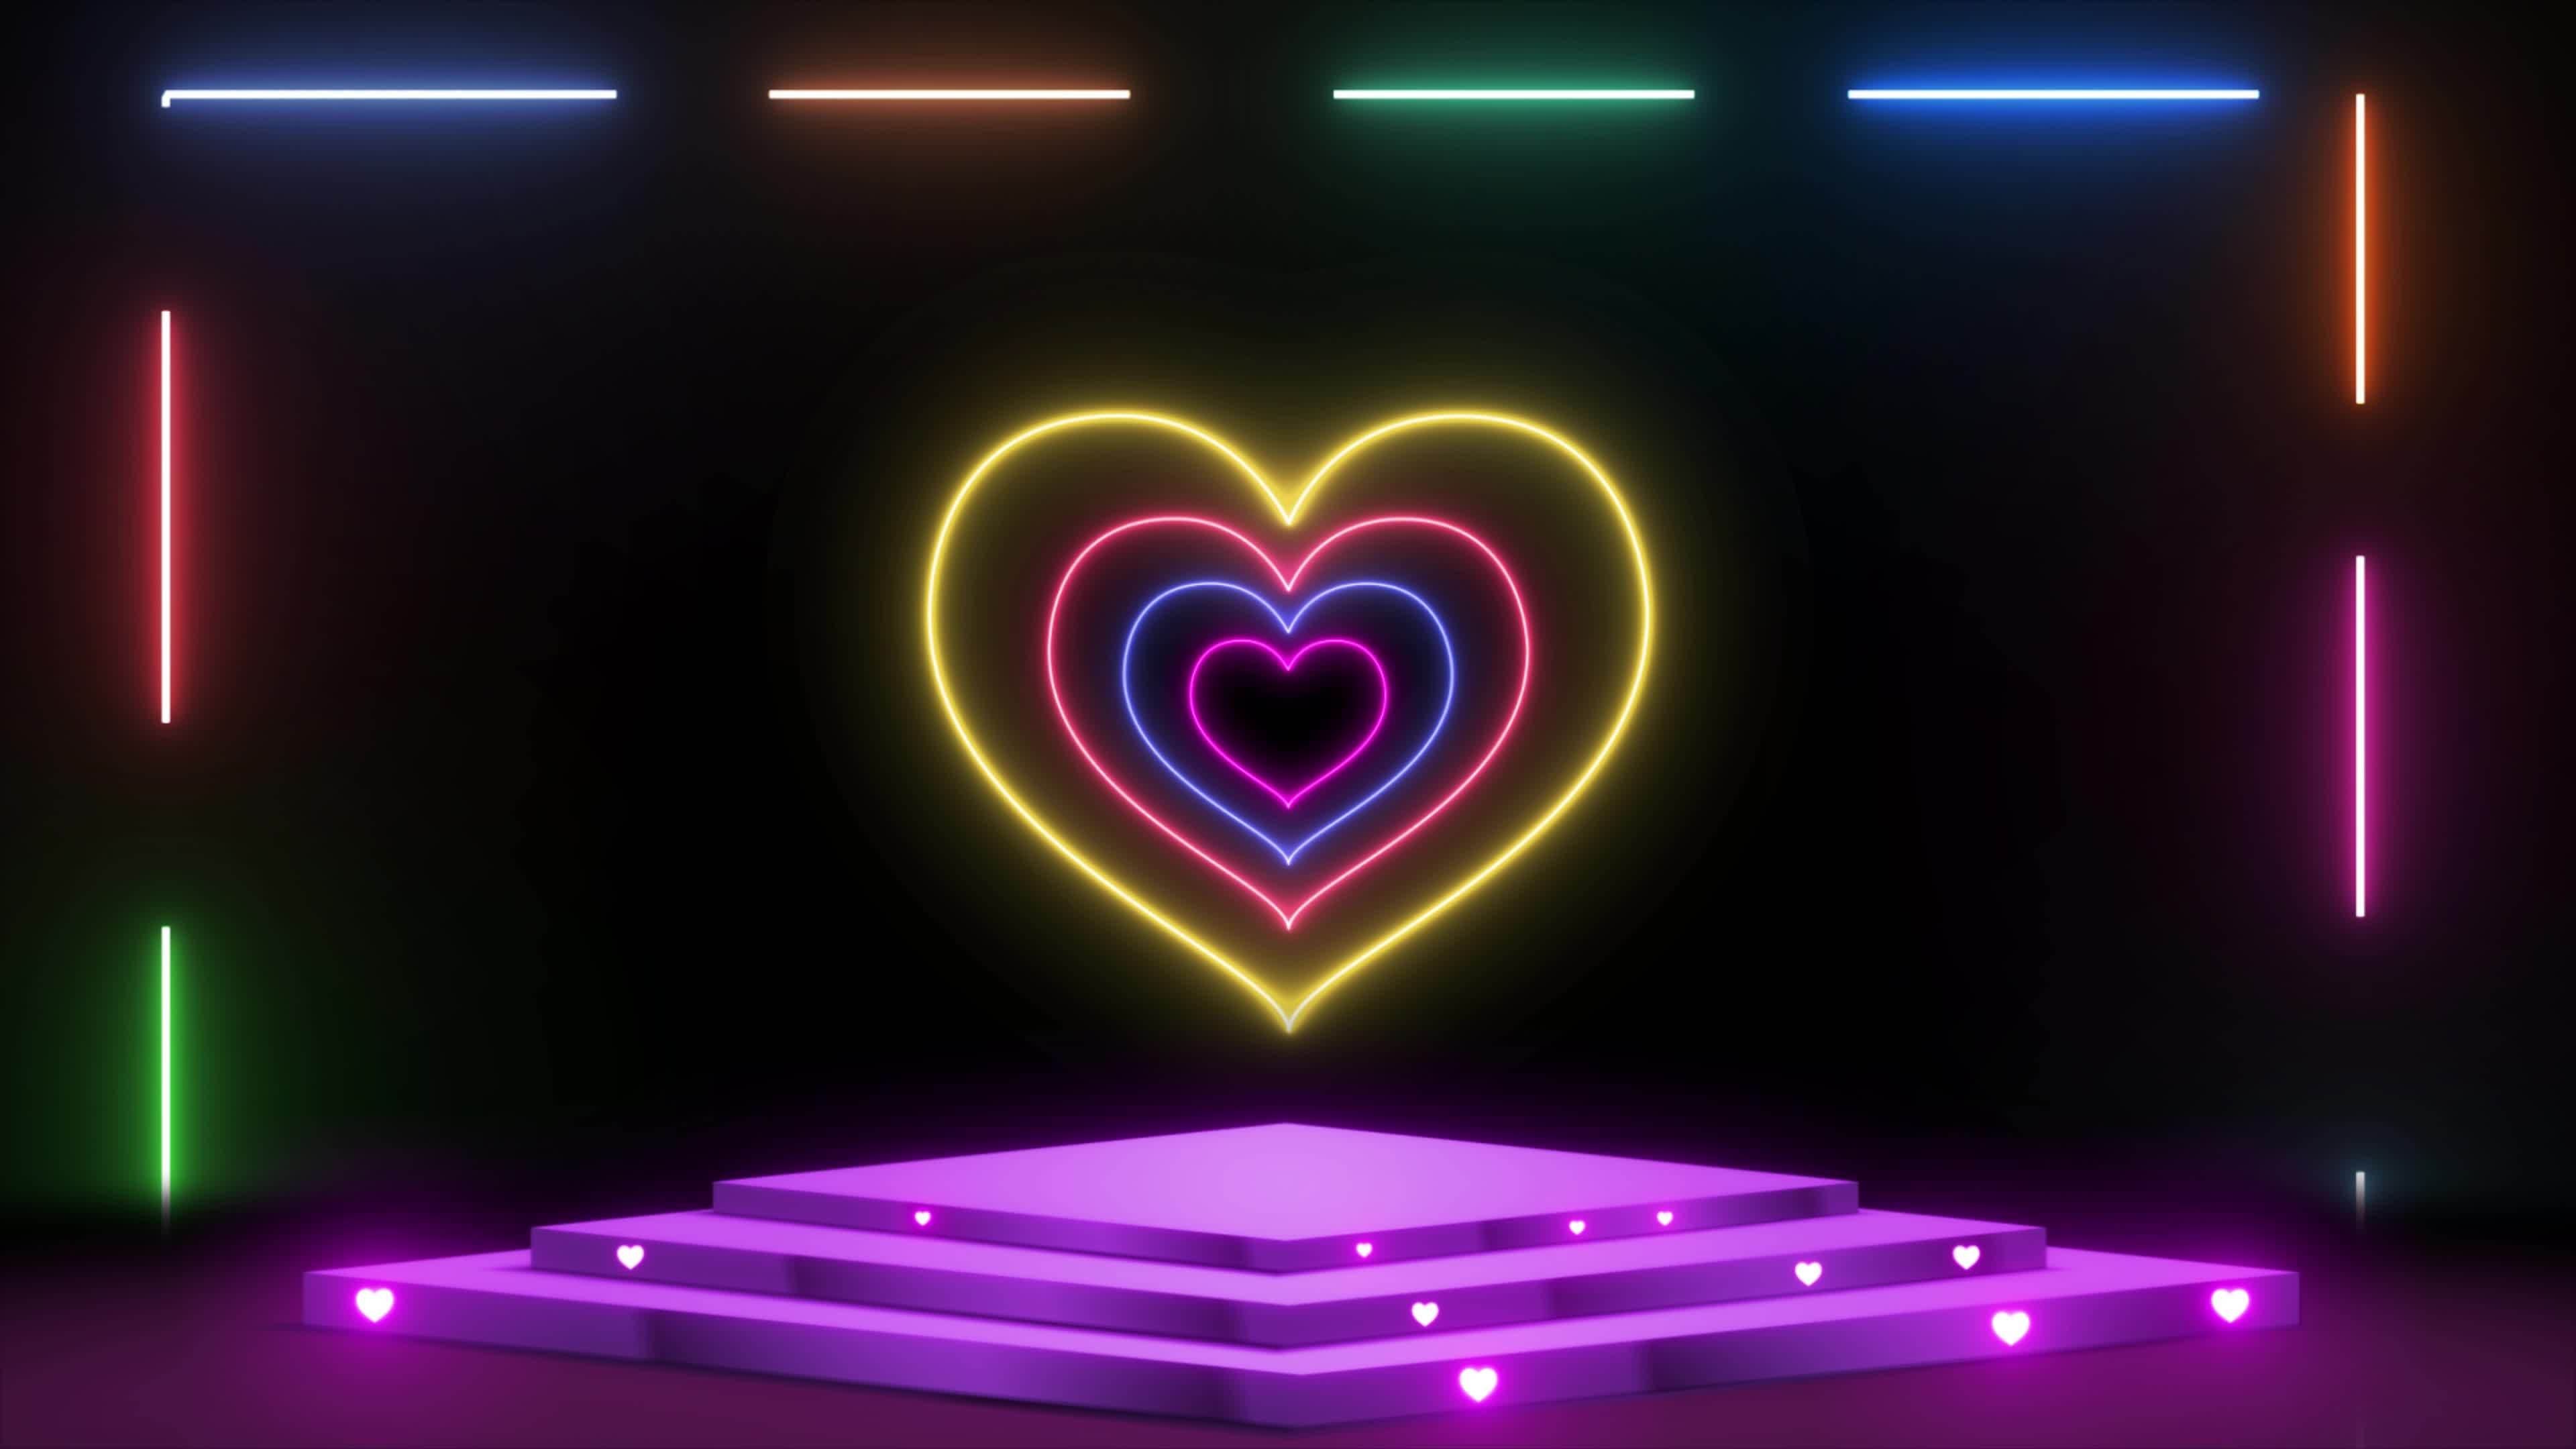 Trong đèn neon hình trái tim sân khấu đang được hoạt hình cực kỳ ấn tượng. Hãy đến và thưởng thức vẻ đẹp đầy sáng tạo của nó!